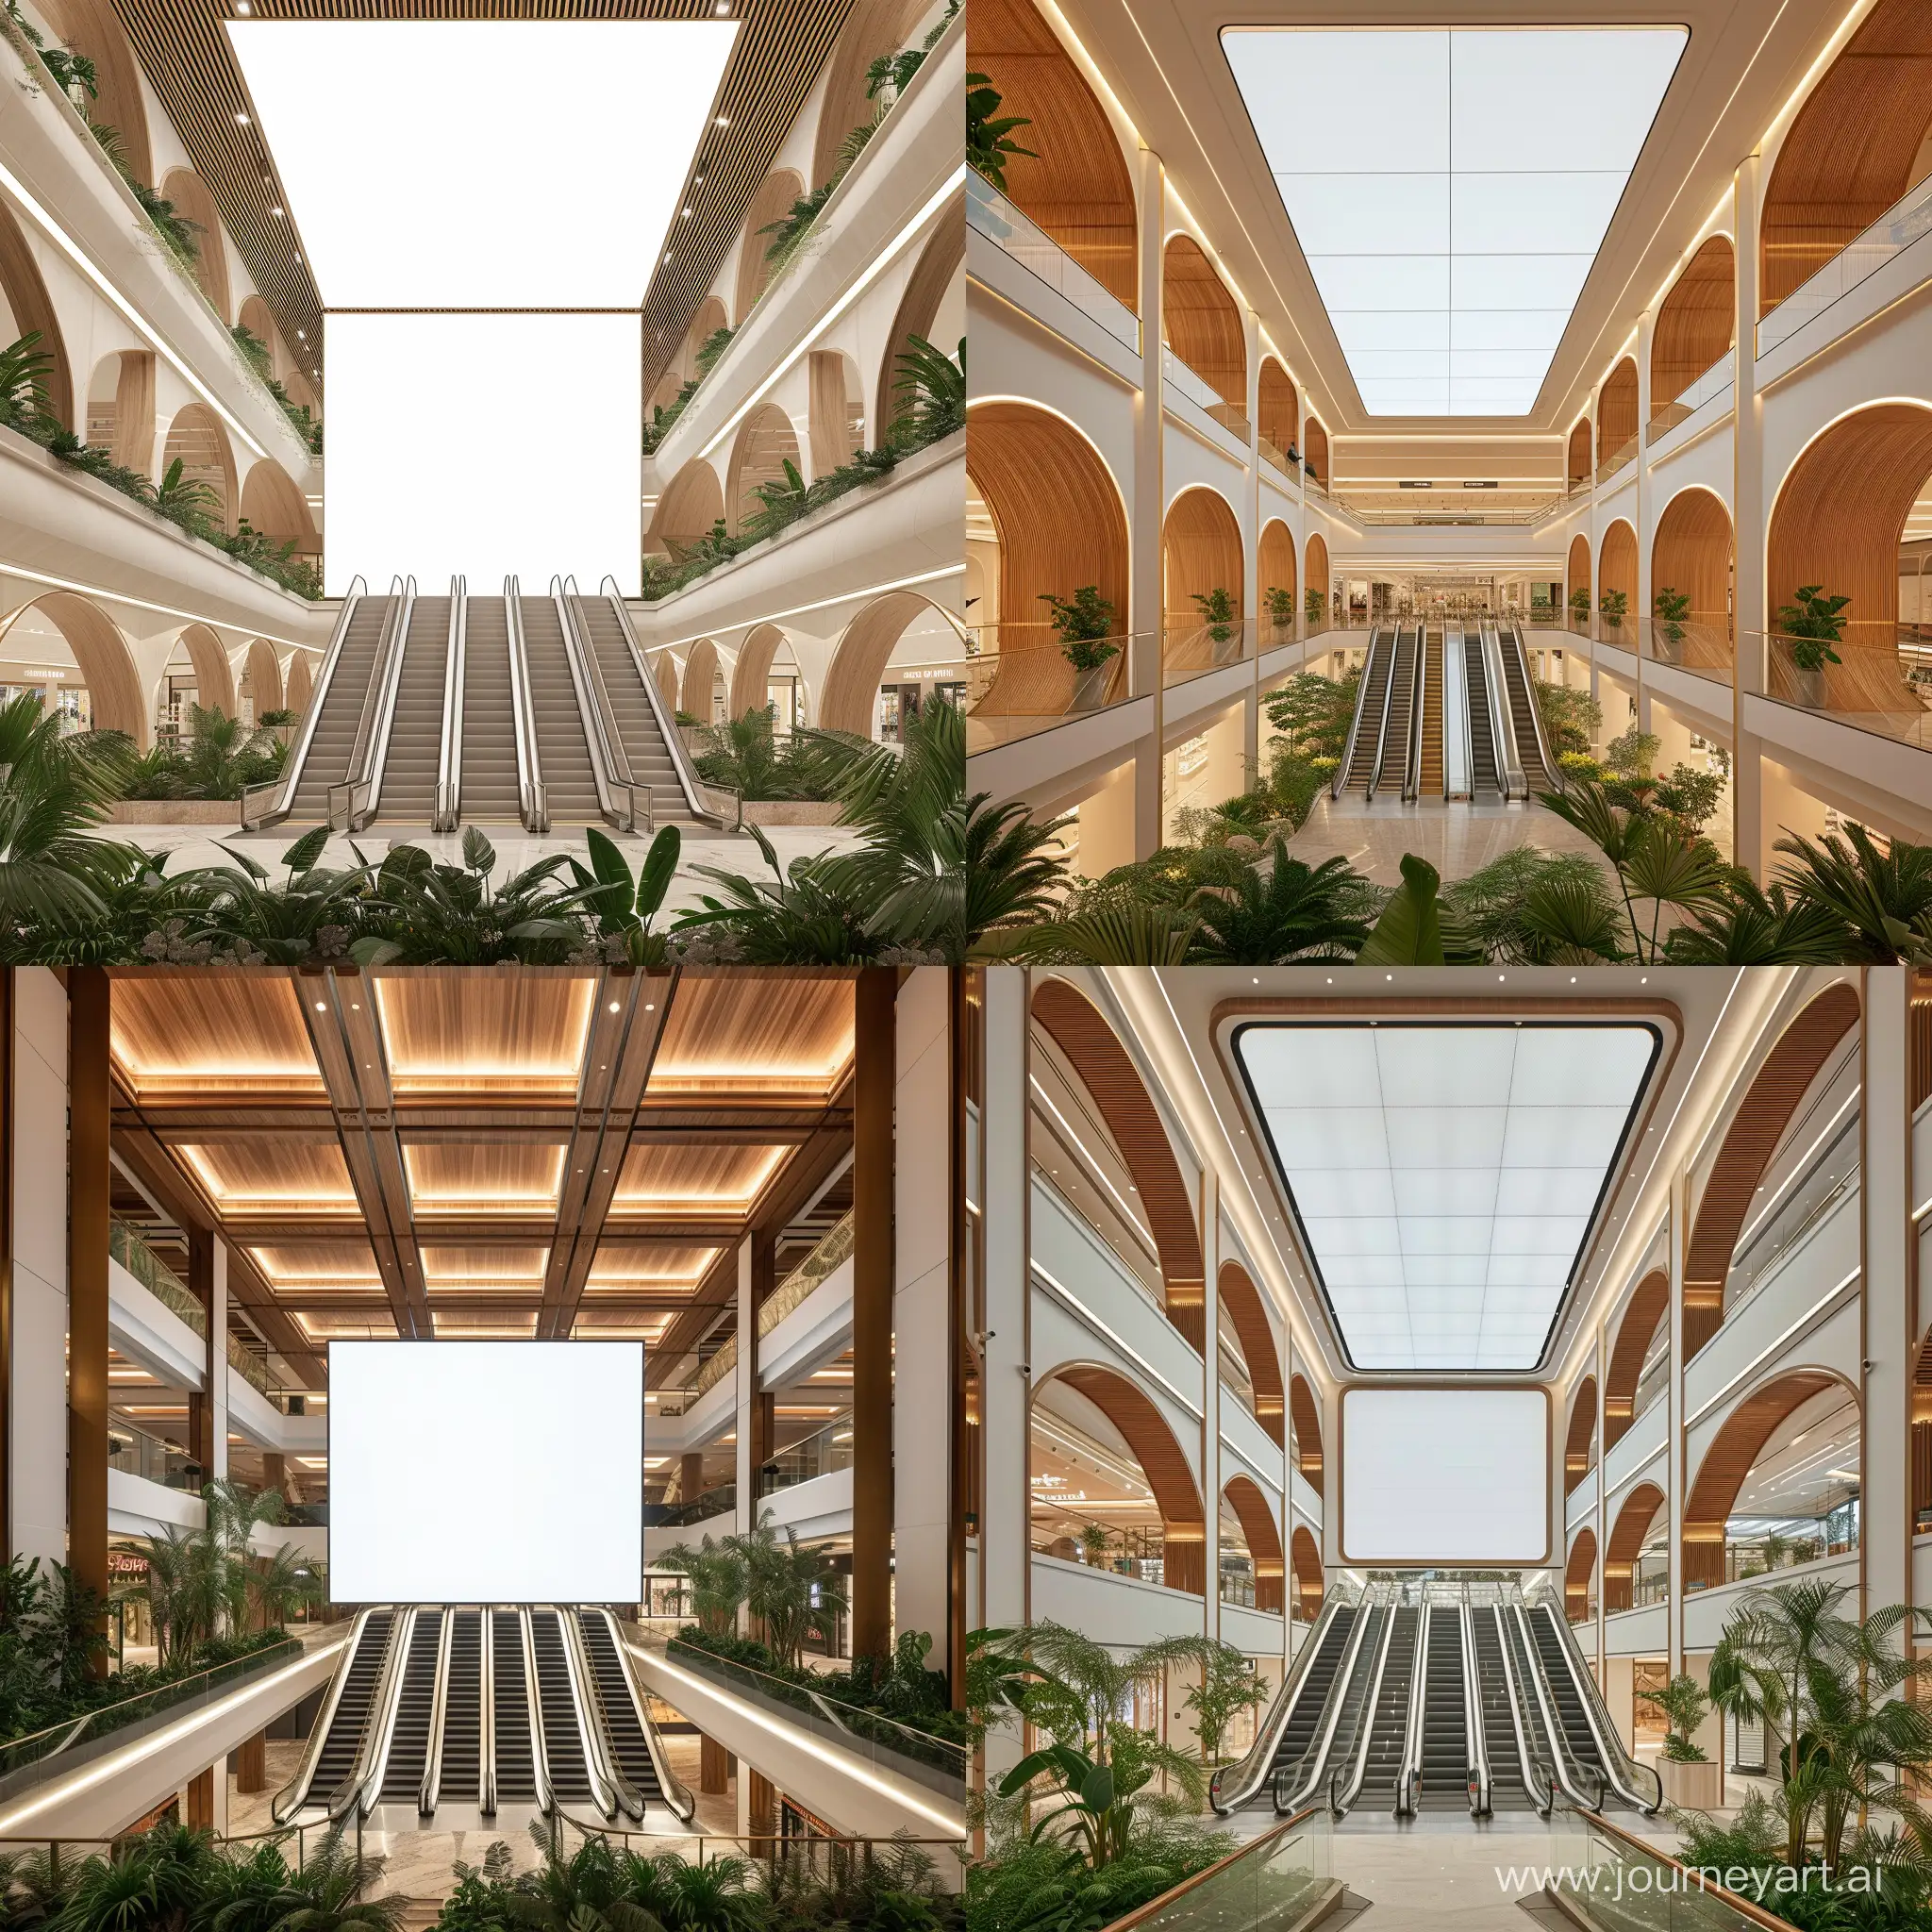 Un atrium rectangle de grand magasin de 3 étages 
un plafond comme une toile écran de lumière rétro éclairé blanche , 6 voutes rode très pure  en bois tropicale autour des 6 Escalators  ,
des plantes tropicales  au sol 